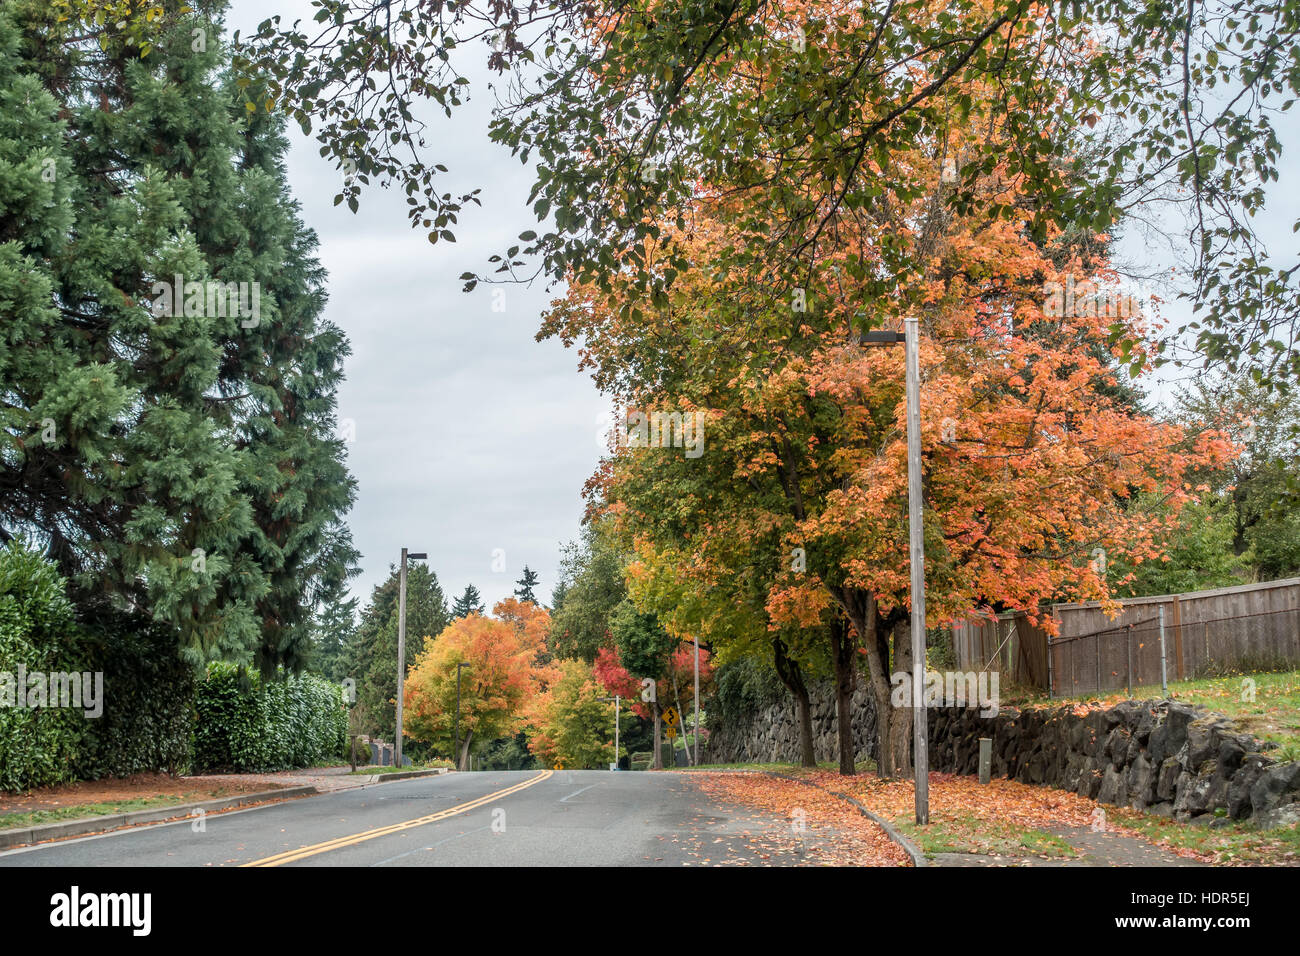 Les couleurs de l'automne radieux jaillissent des arbres bordant une rue de Saint-Brieuc, Washington. Banque D'Images